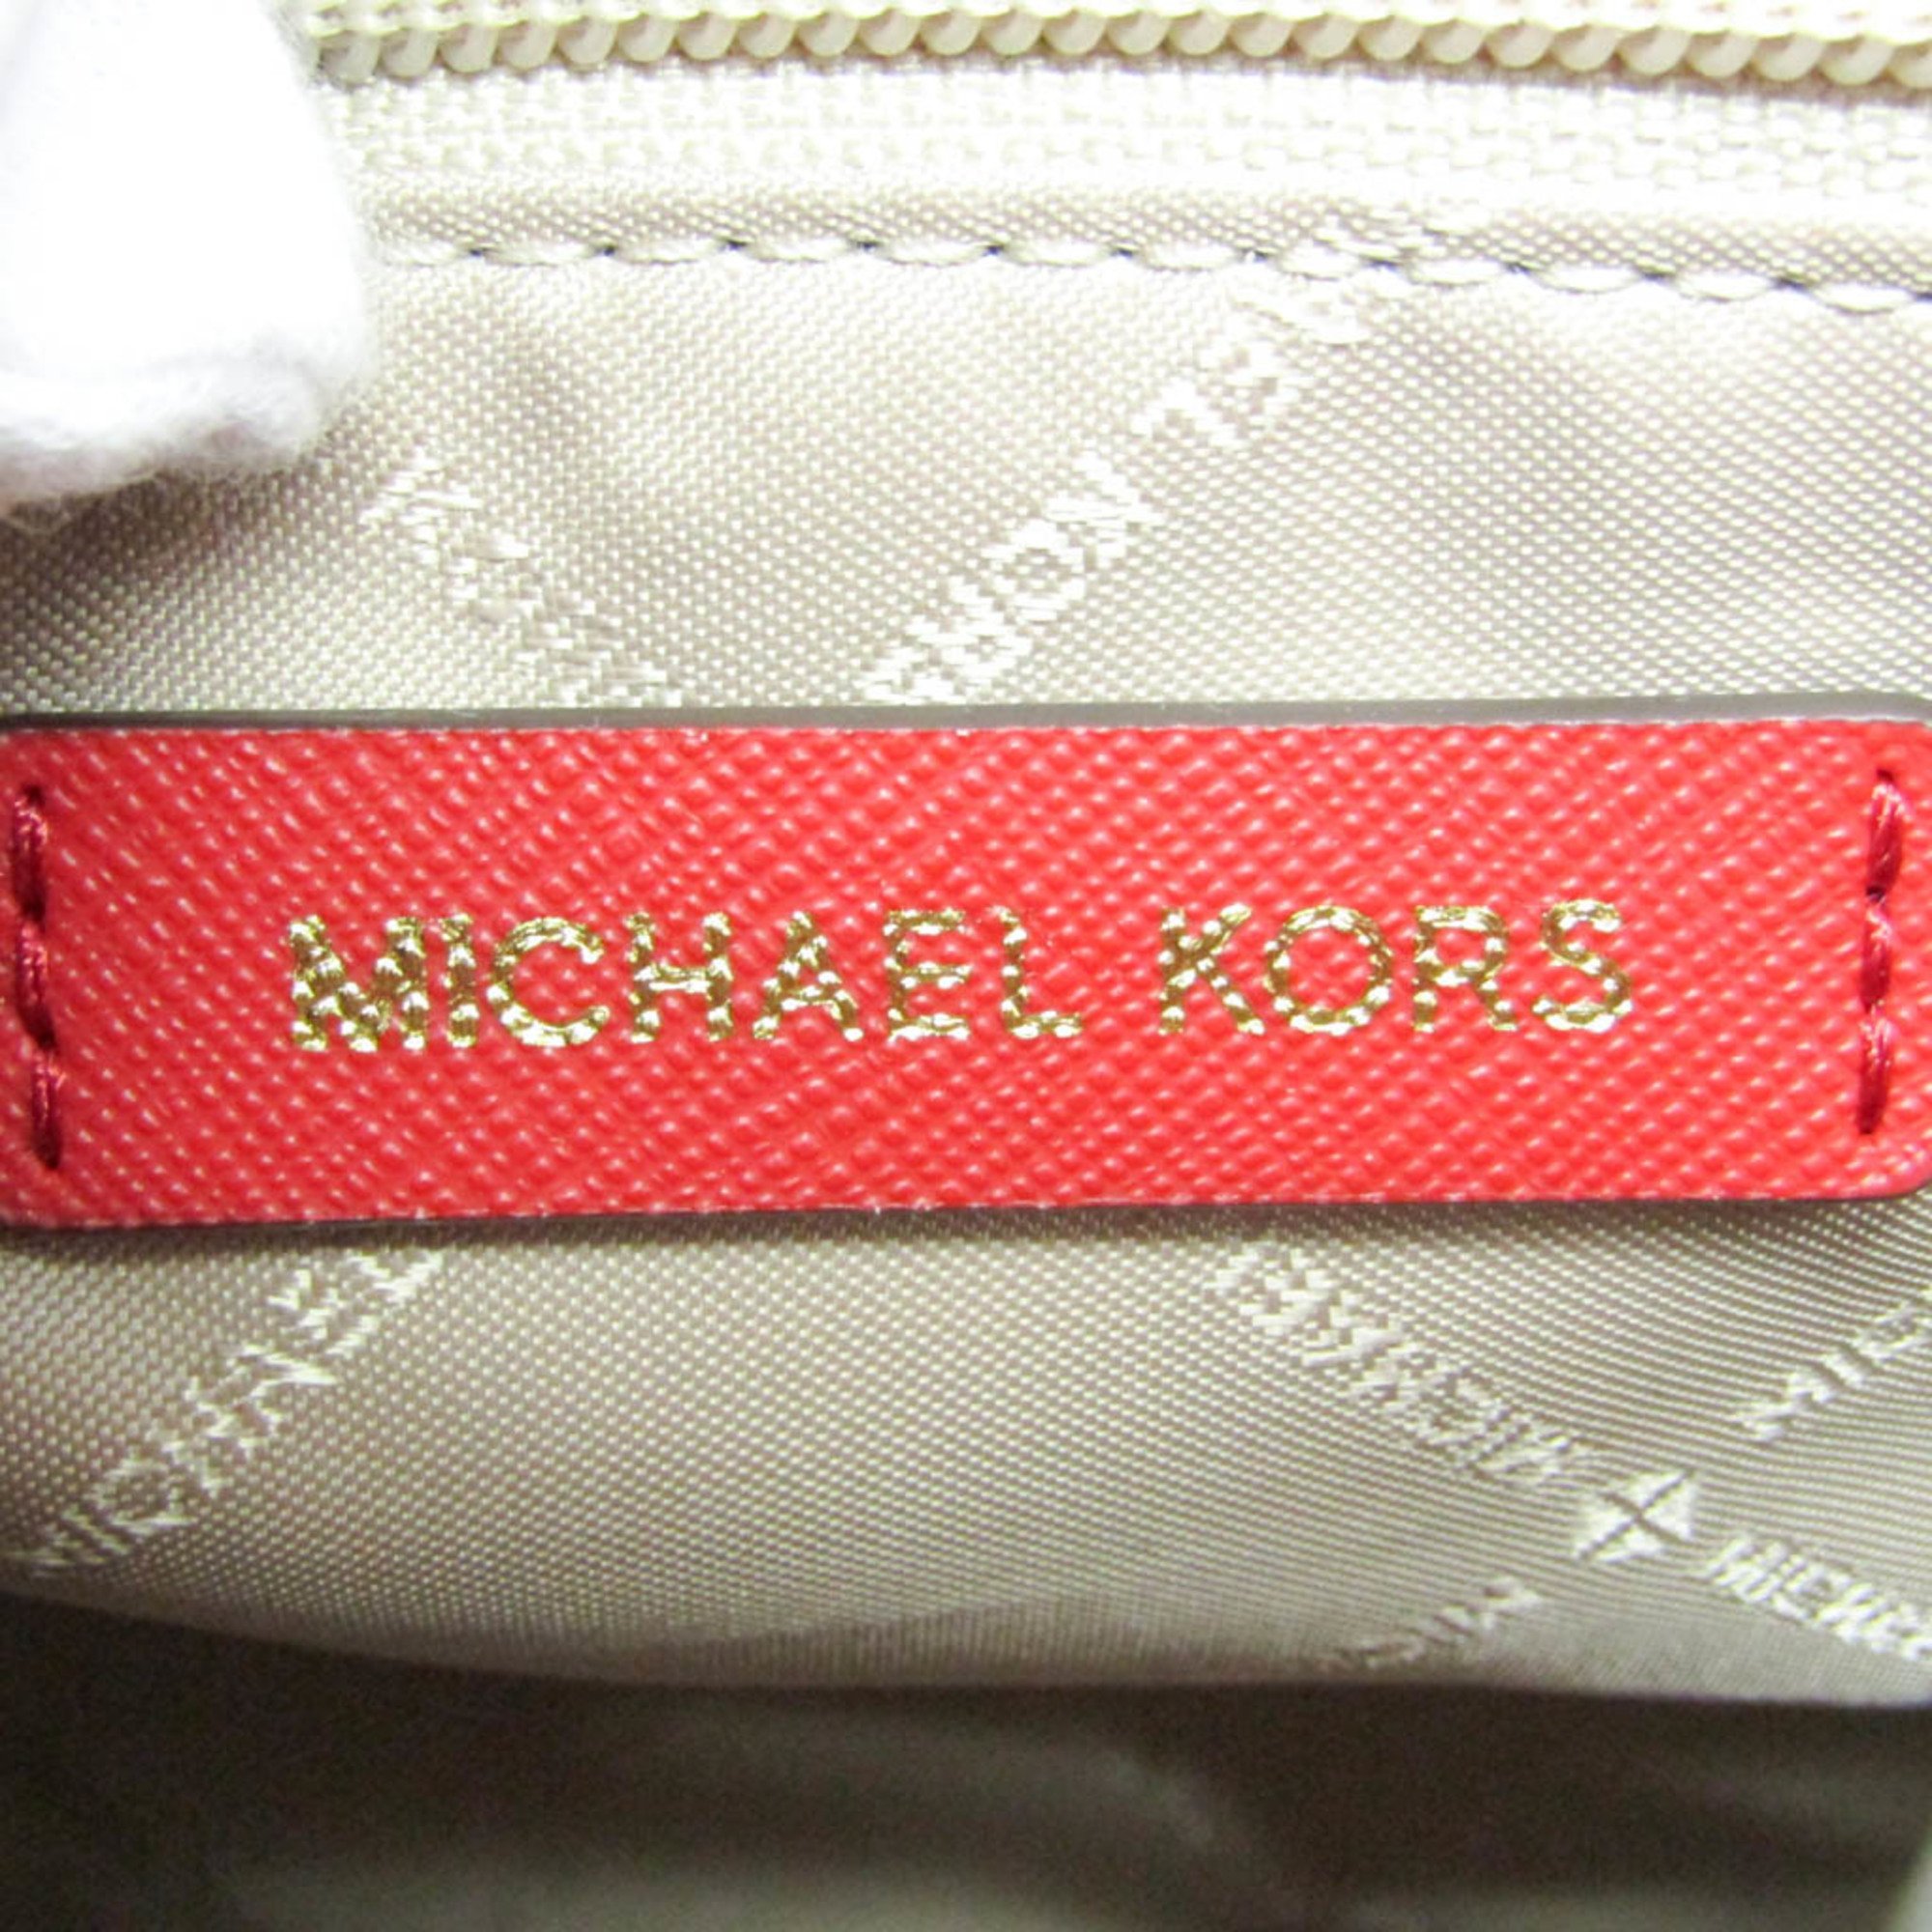 Michael Kors JET SET TRAVEL XS CRYAL CNV TZ TOTE LEATHER 35T9GTVT0L Women's Leather Handbag,Shoulder Bag Red Color